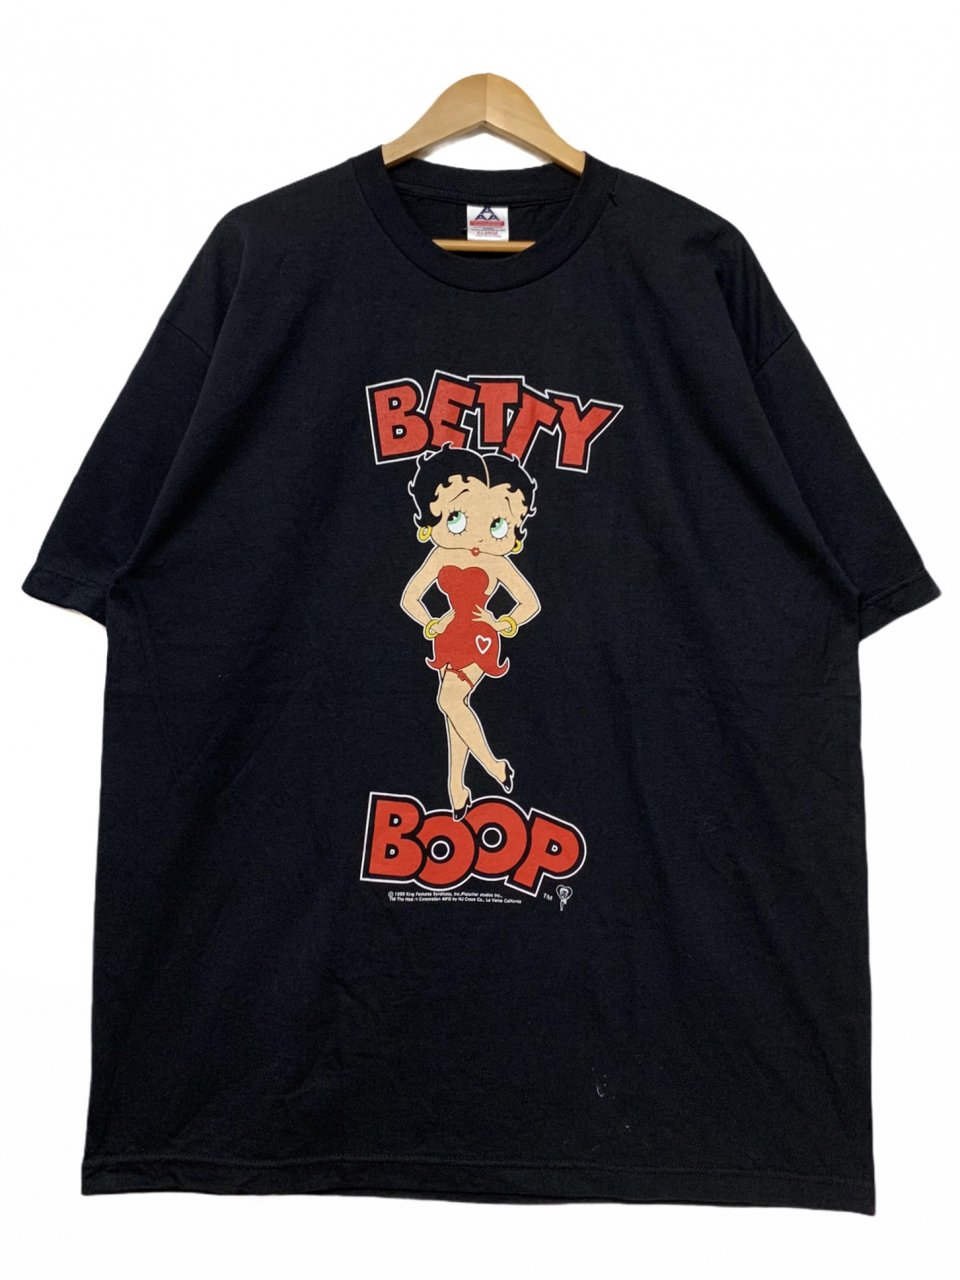 【レア】ポパイ ベティちゃん コラボTシャツ 1996年製 シングルステッチ